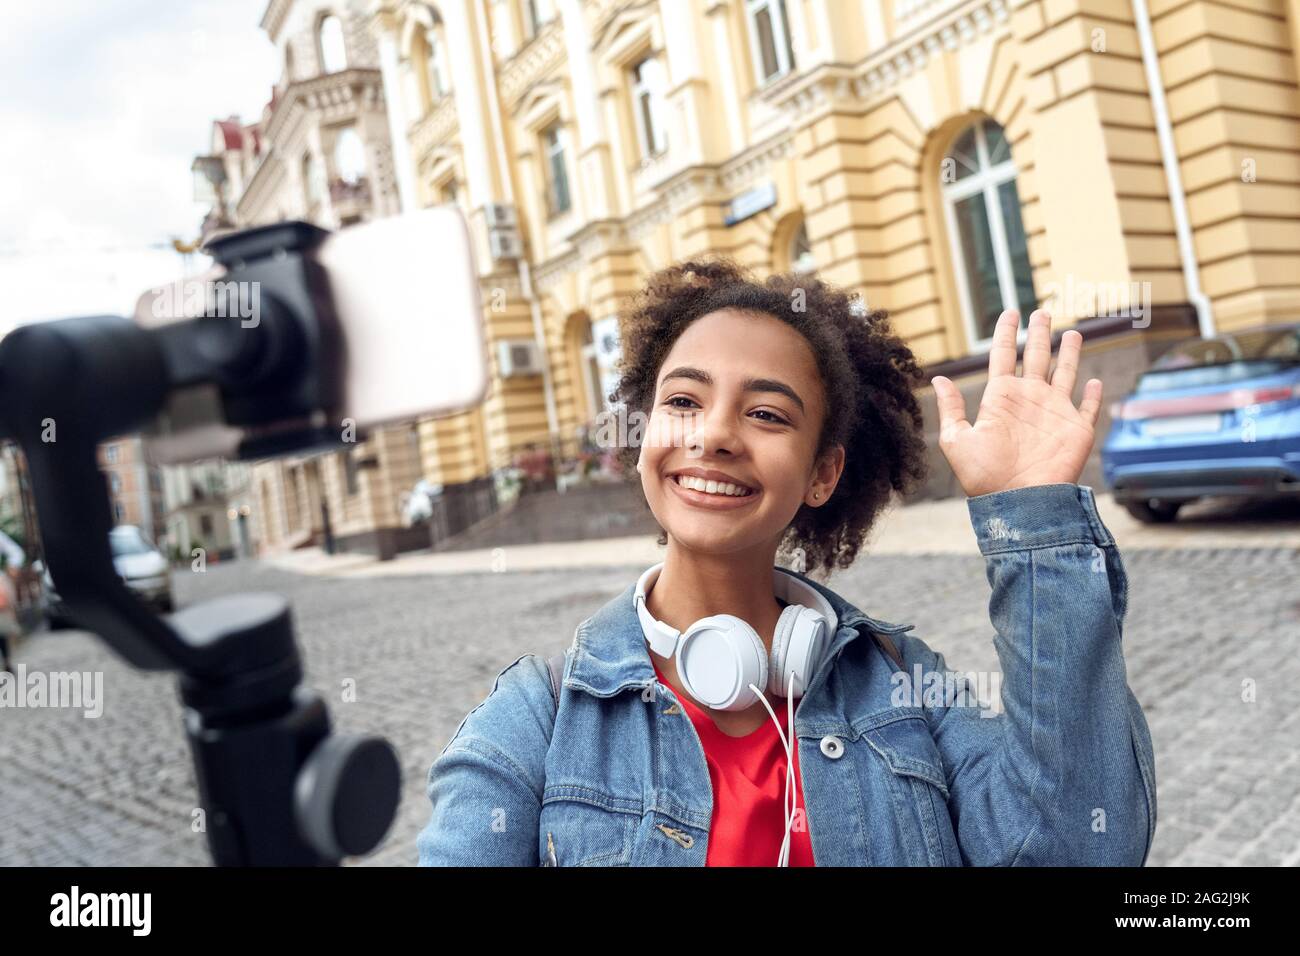 Loisirs de plein air. Jeune fille blogger avec un casque d'enregistrement stabilisateur holding vlog sur smartphone ludique parler close-up Banque D'Images